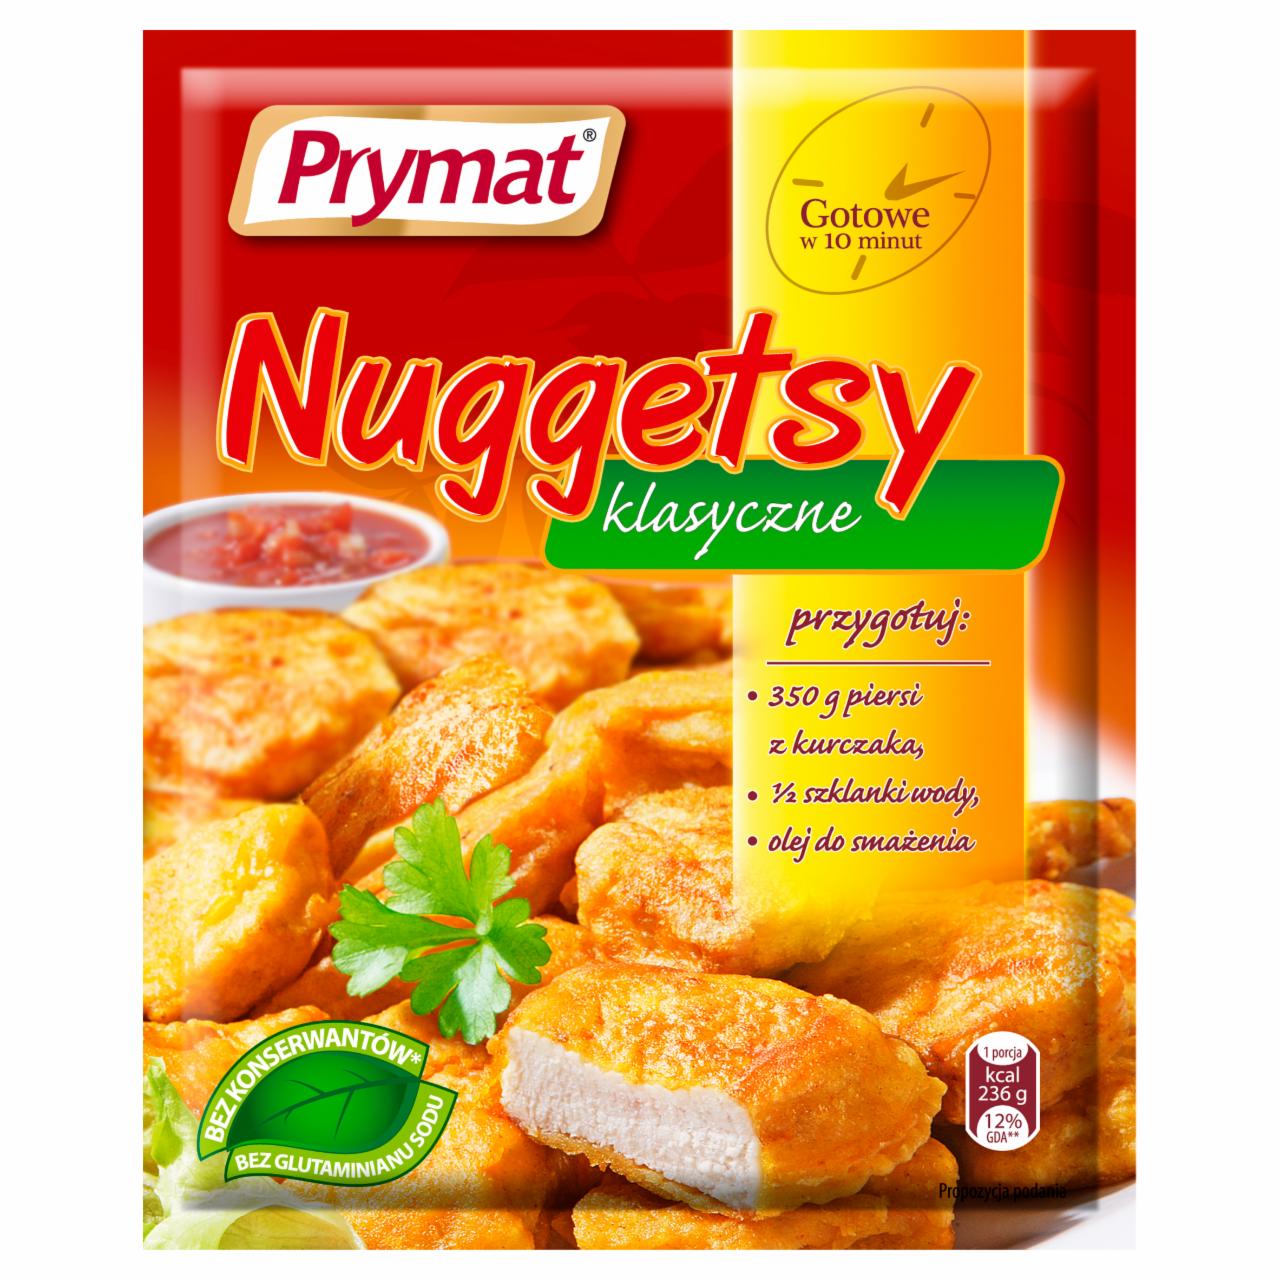 Zdjęcia - Prymat Nuggetsy klasyczne Ciasto do kurczaka 90 g